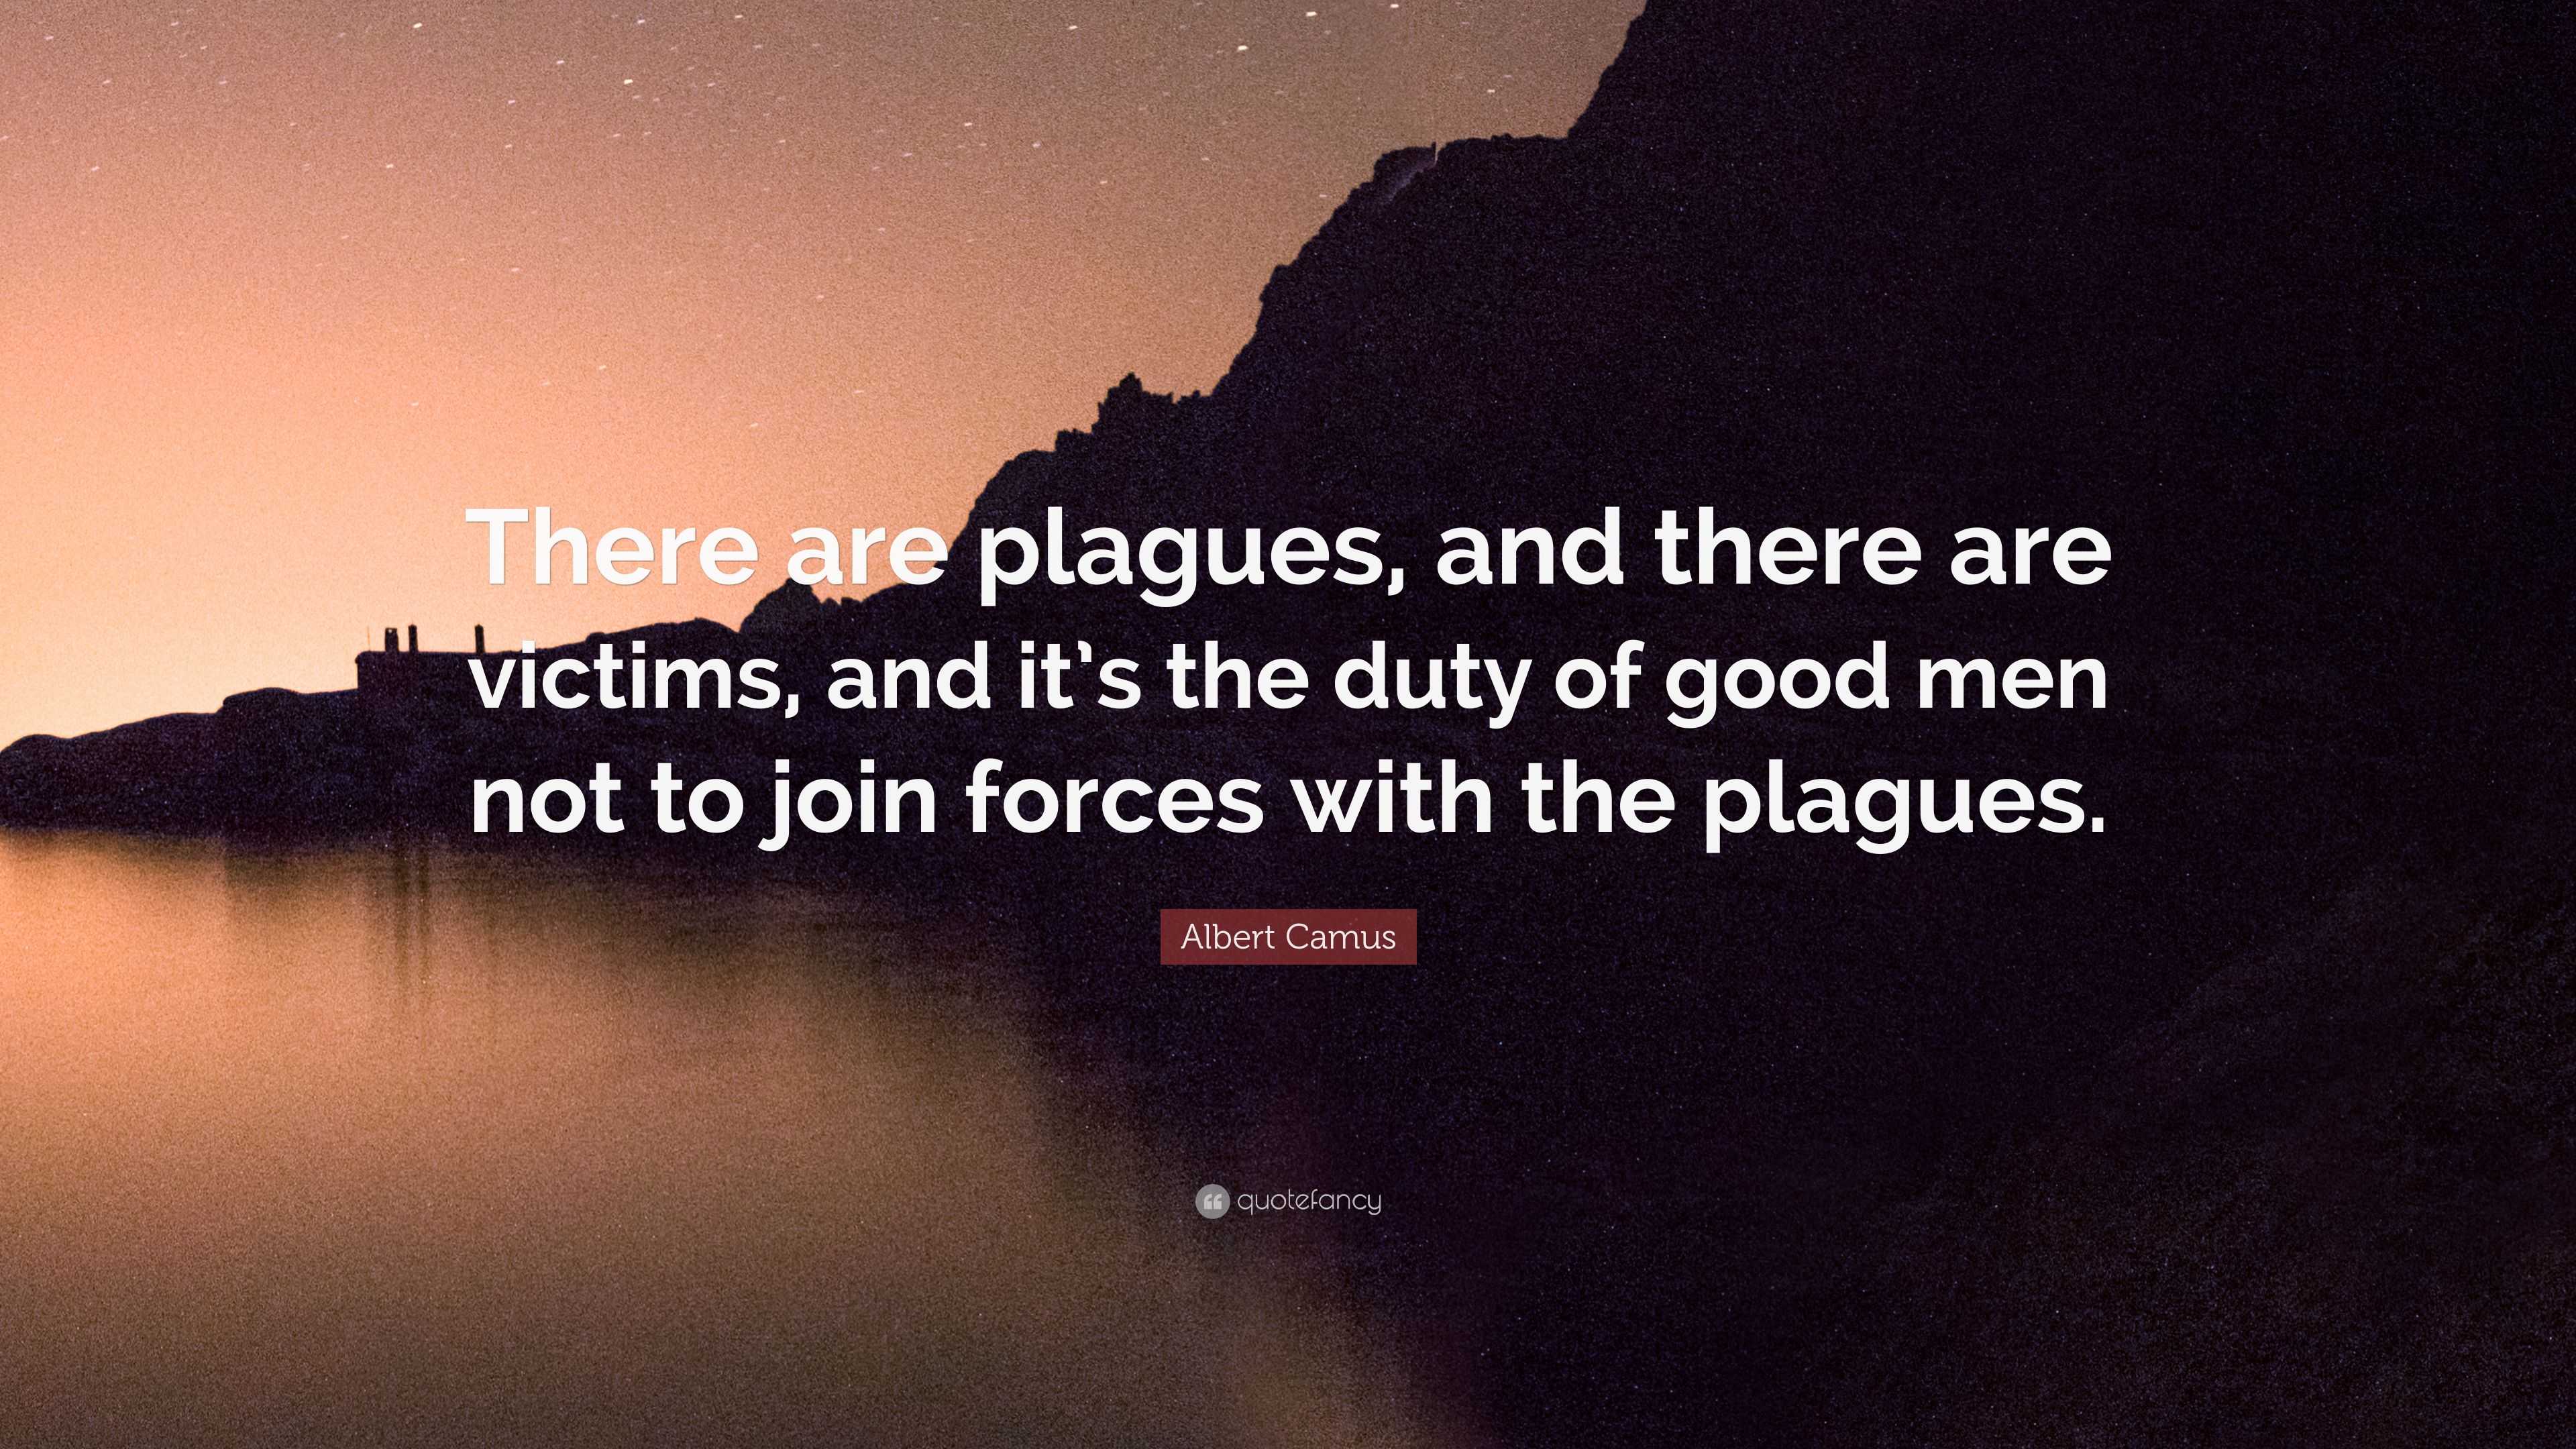 Plague by H.W. "Buzz" Bernard